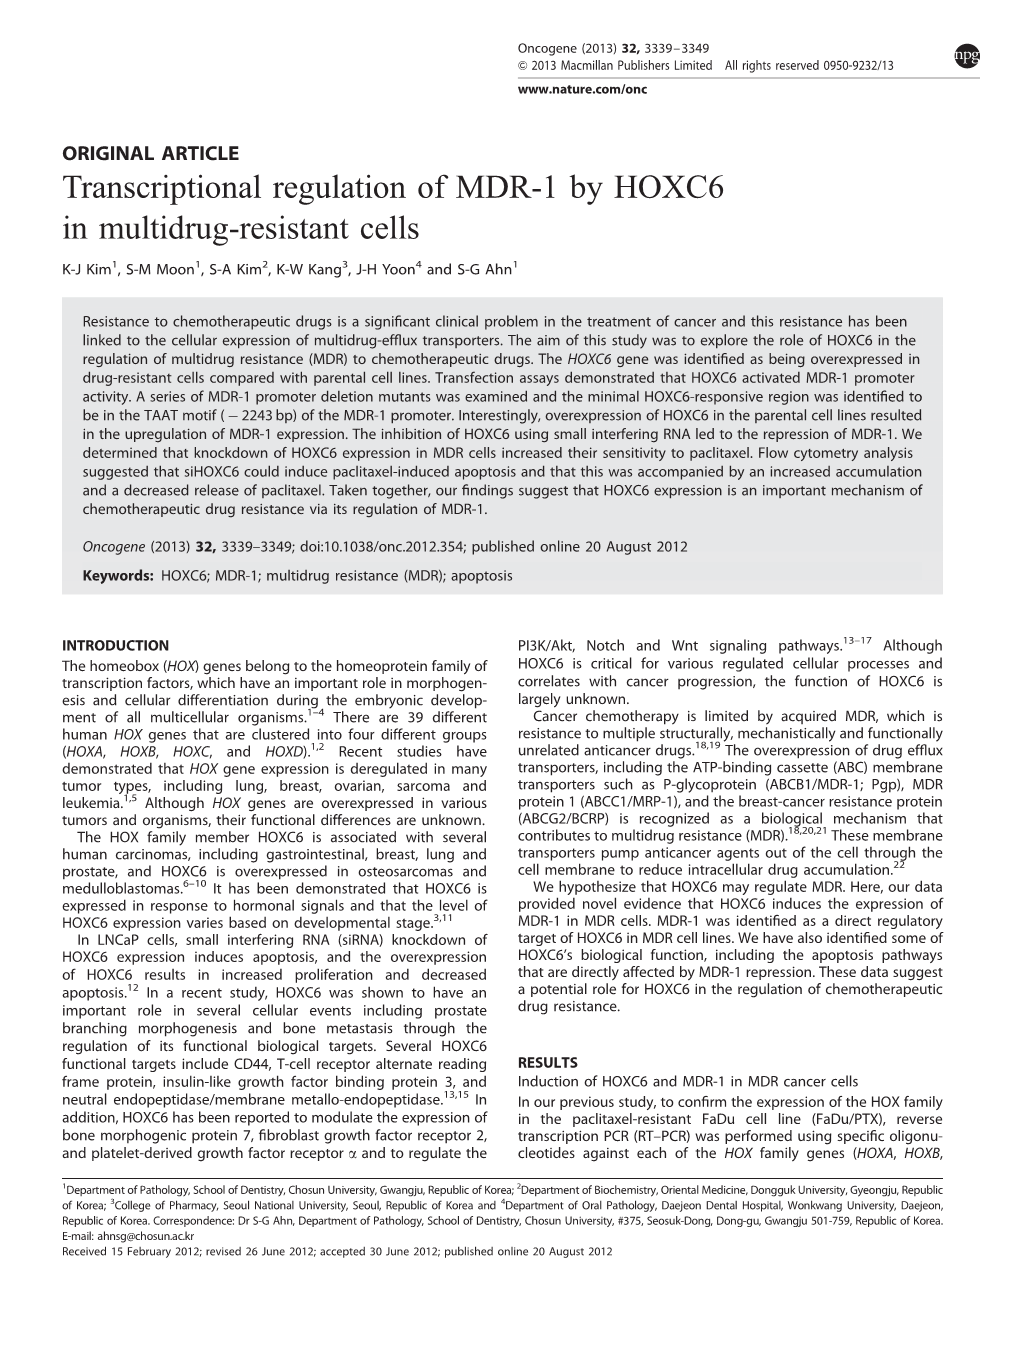 Transcriptional Regulation of MDR-1 by HOXC6 in Multidrug-Resistant Cells